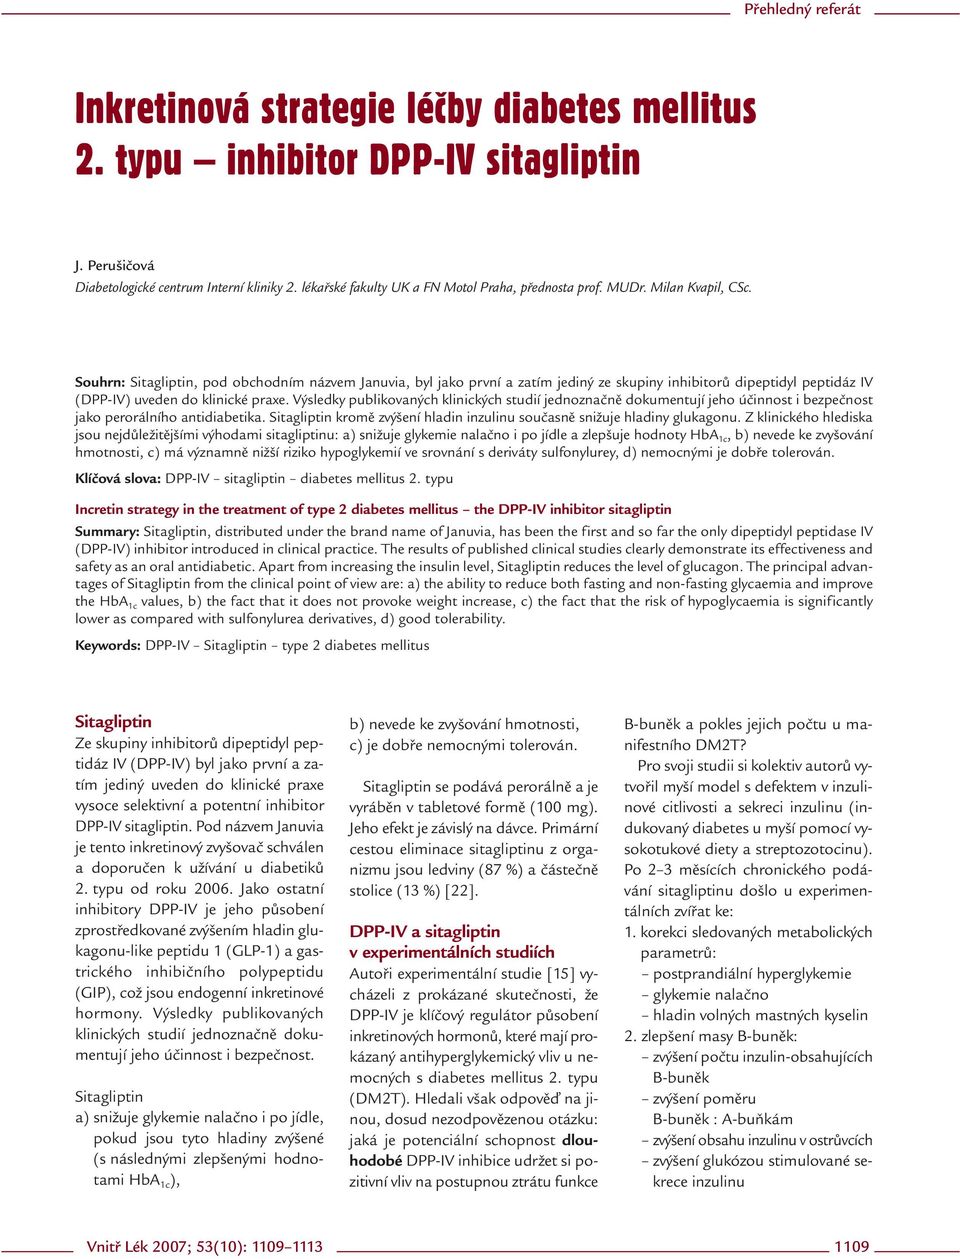 Souhrn: Sitagliptin, pod obchodním názvem Januvia, byl jako první a zatím jediný ze skupiny inhibitorů dipeptidyl peptidáz IV (DPP-IV) uveden do klinické praxe.